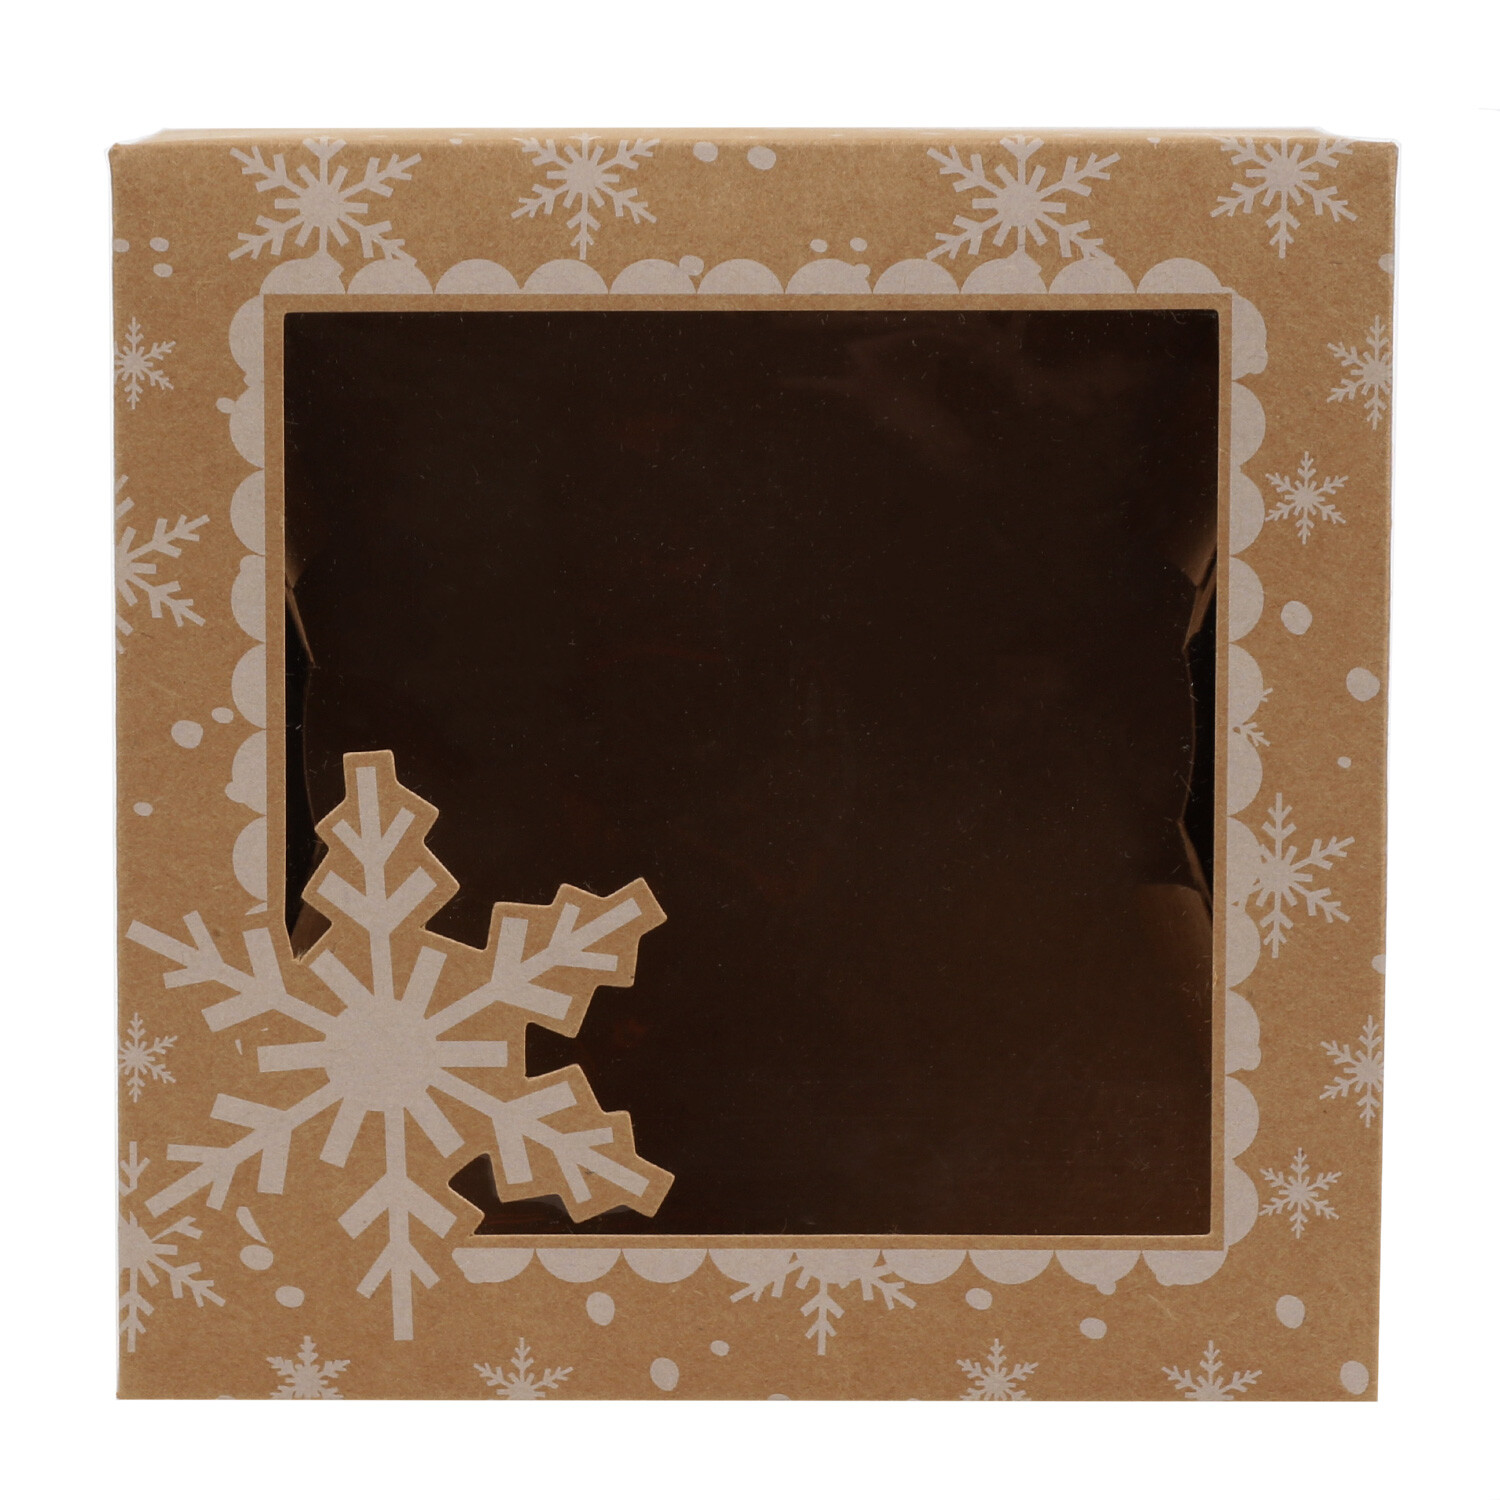 Christmas Treat Box - Brown Image 1